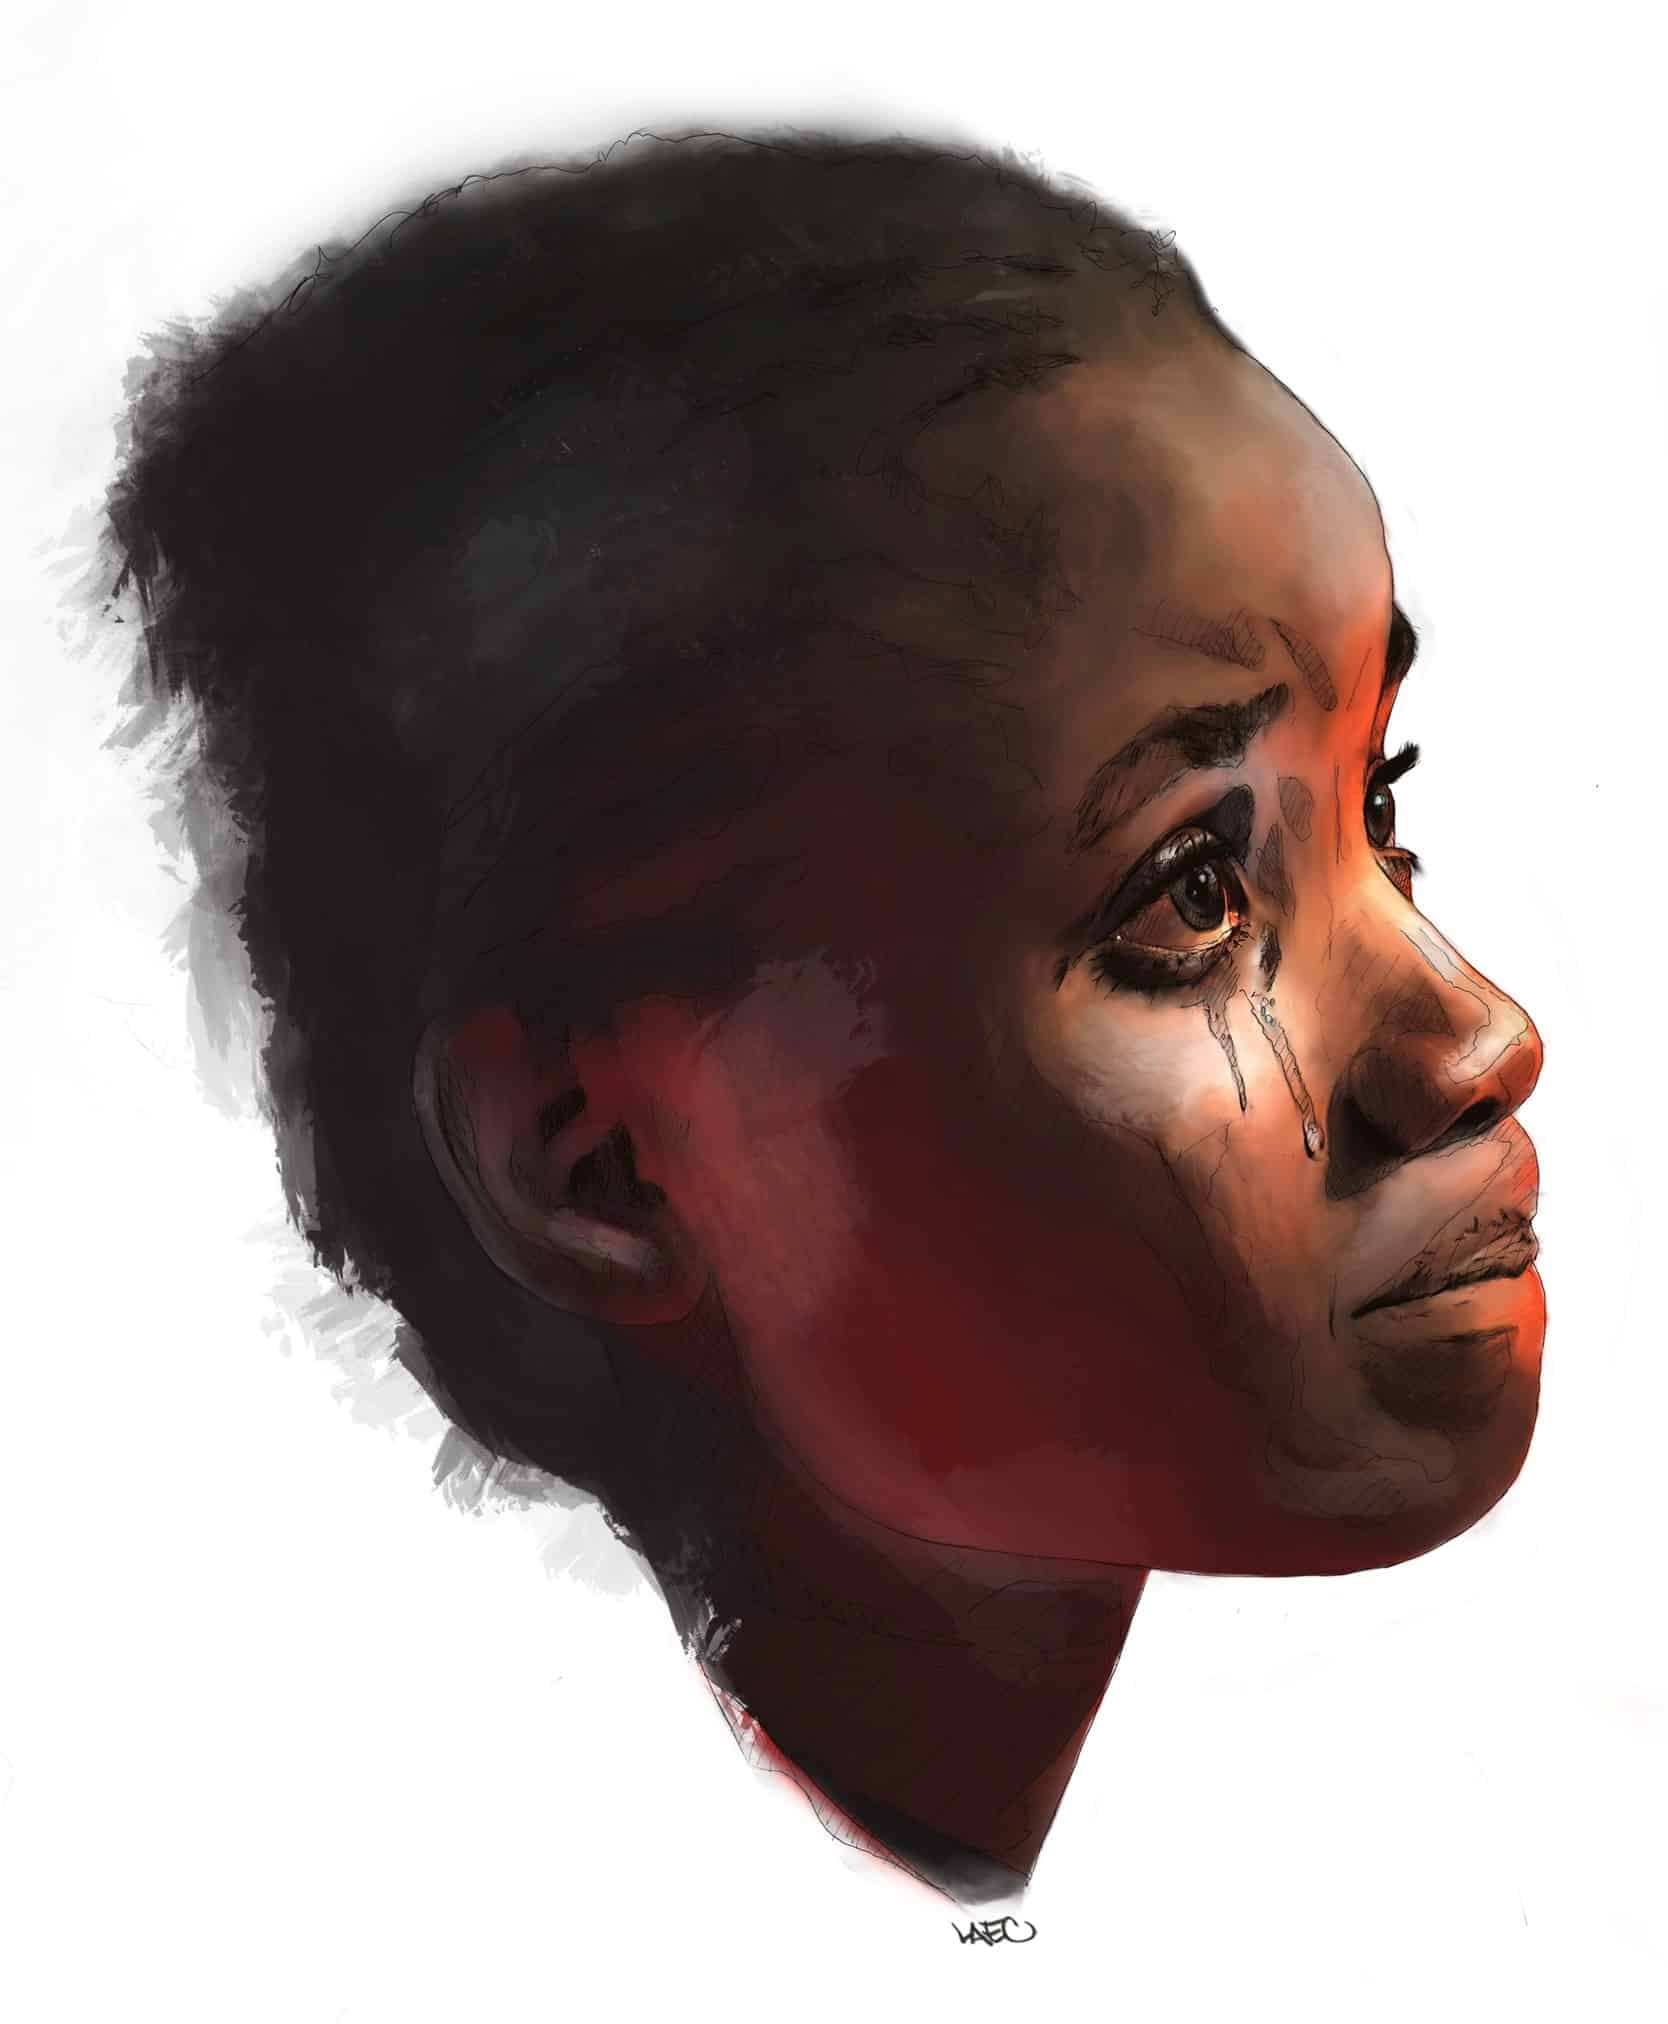 Visage de femme pleurant, illustration de l'artiste Laec.